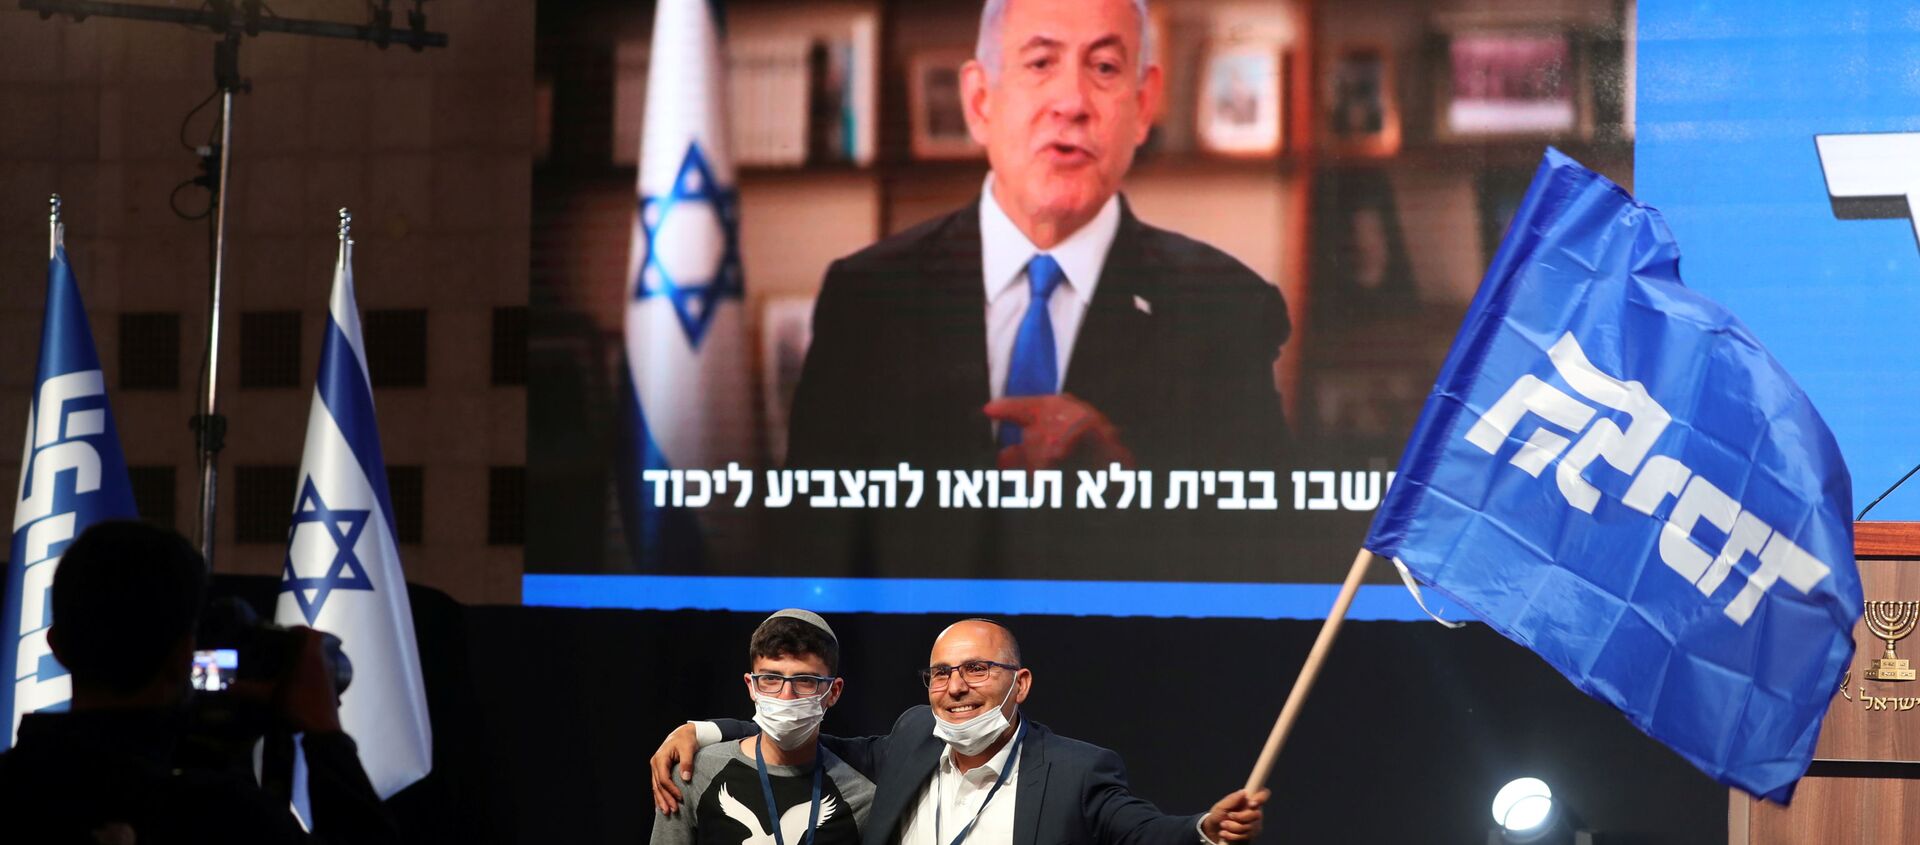 İsrail televizyonlarında yayınlanan sandık çıkış anketlerine göre, Başbakan Benyamin Netanyahu’nun partisi Likud, 33 milletvekili çıkararak seçimde birinci oldu. - Sputnik Türkiye, 1920, 01.04.2021